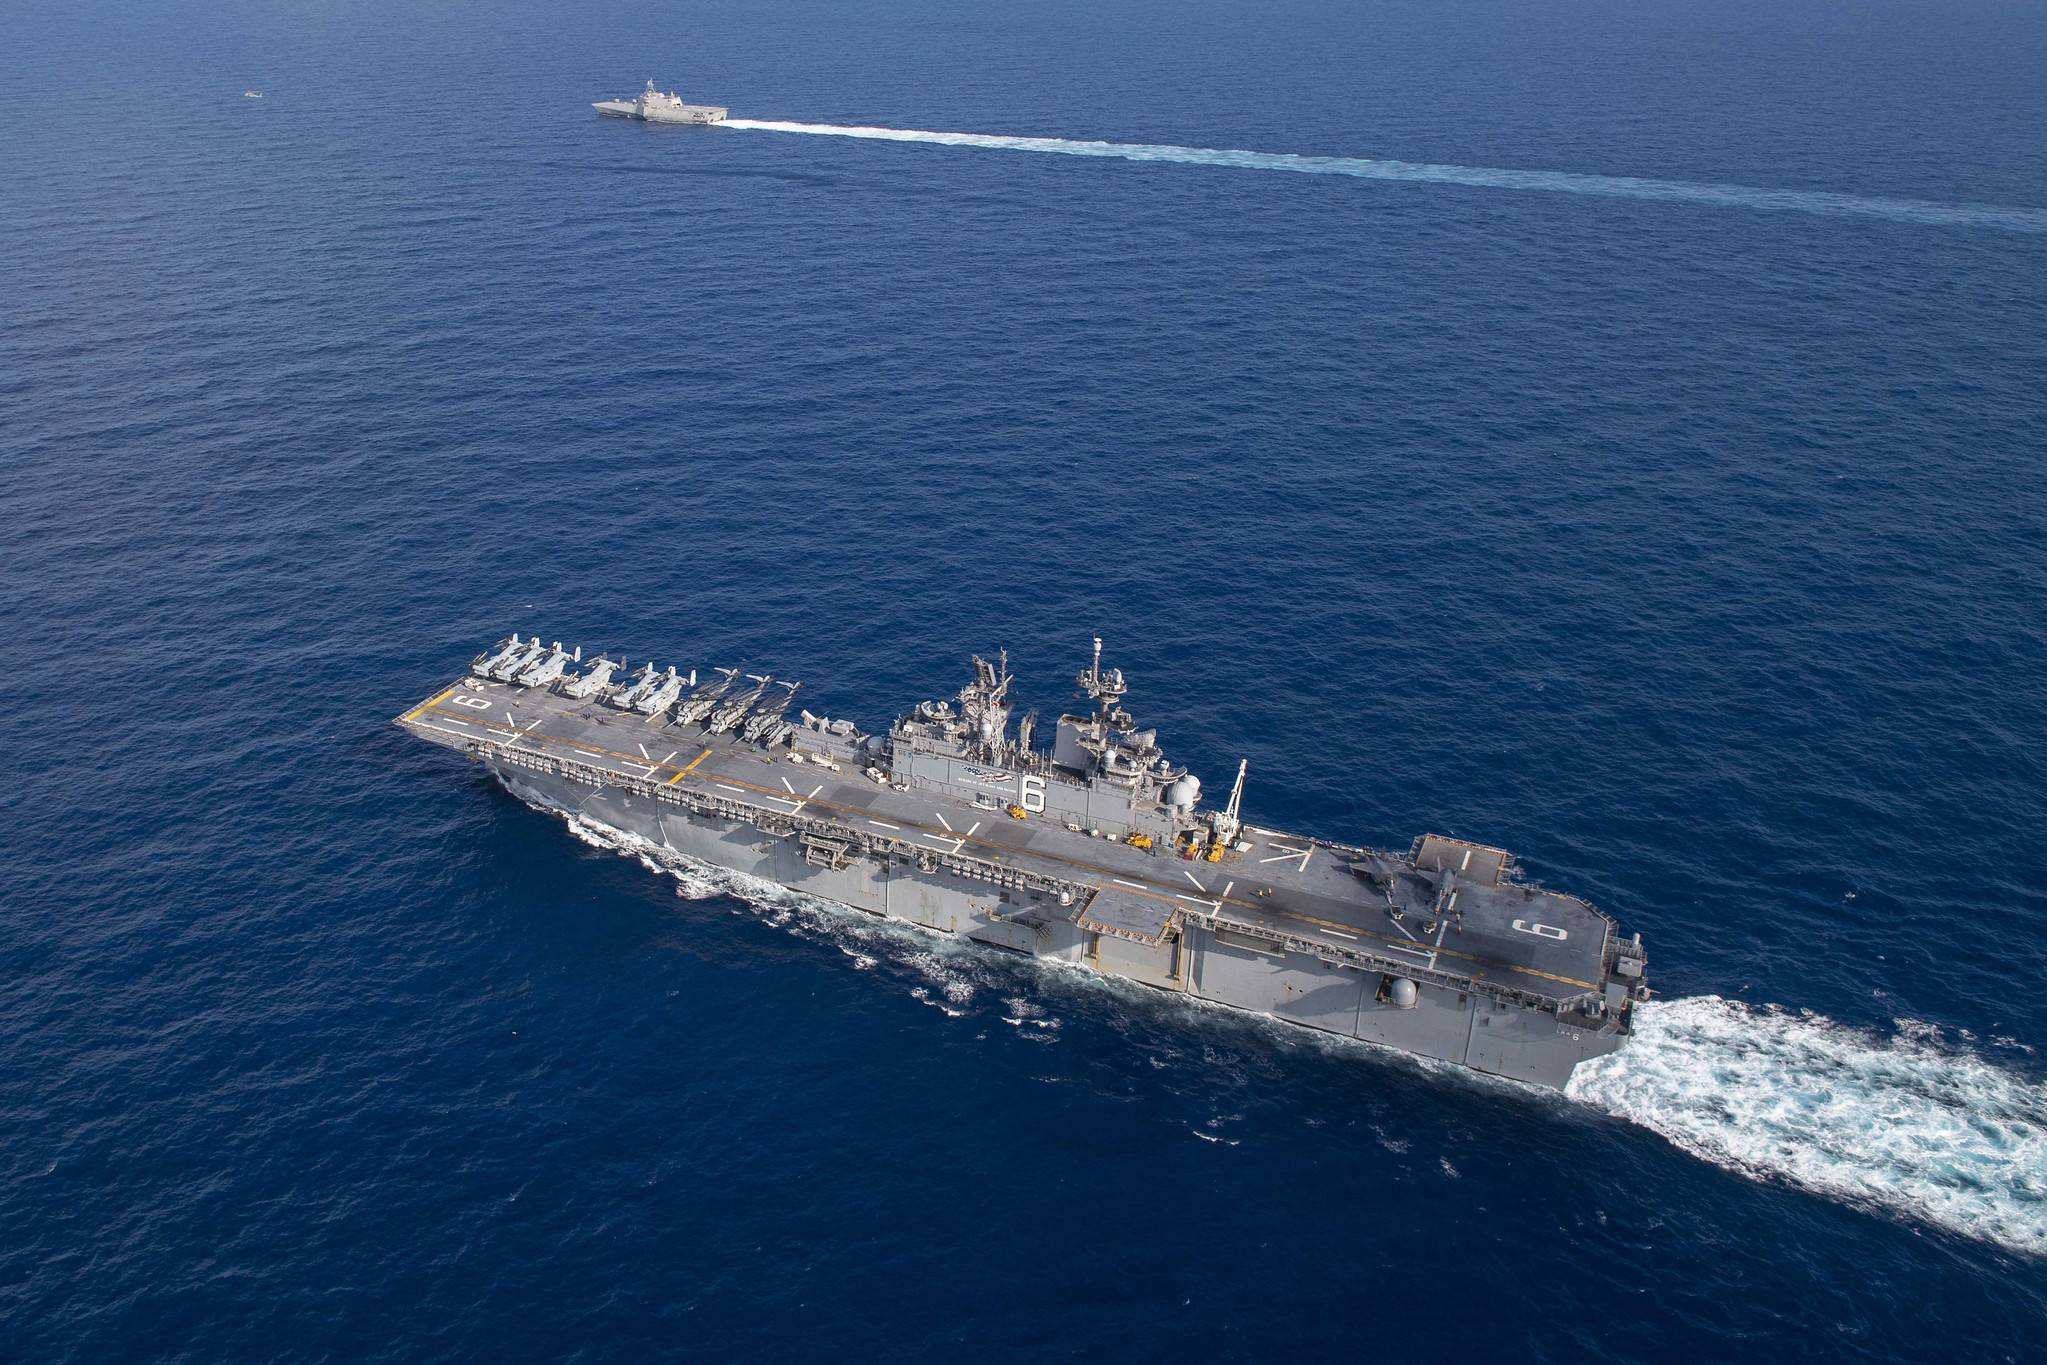 美军在中国周边动作频频 航母、巡逻机同时现身东海南海 - 2020年8月9日, 俄罗斯卫星通讯社